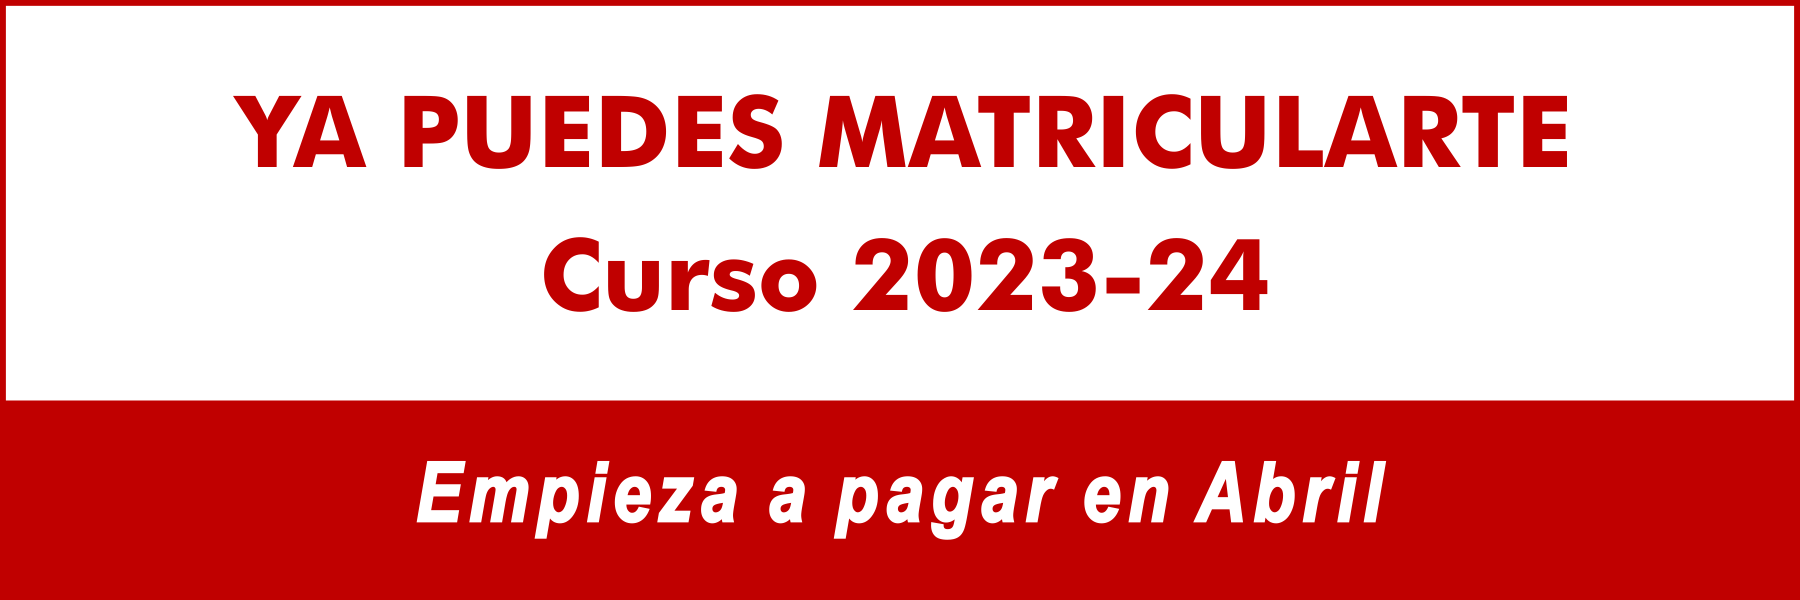 Matrícula cursos 2023-2024